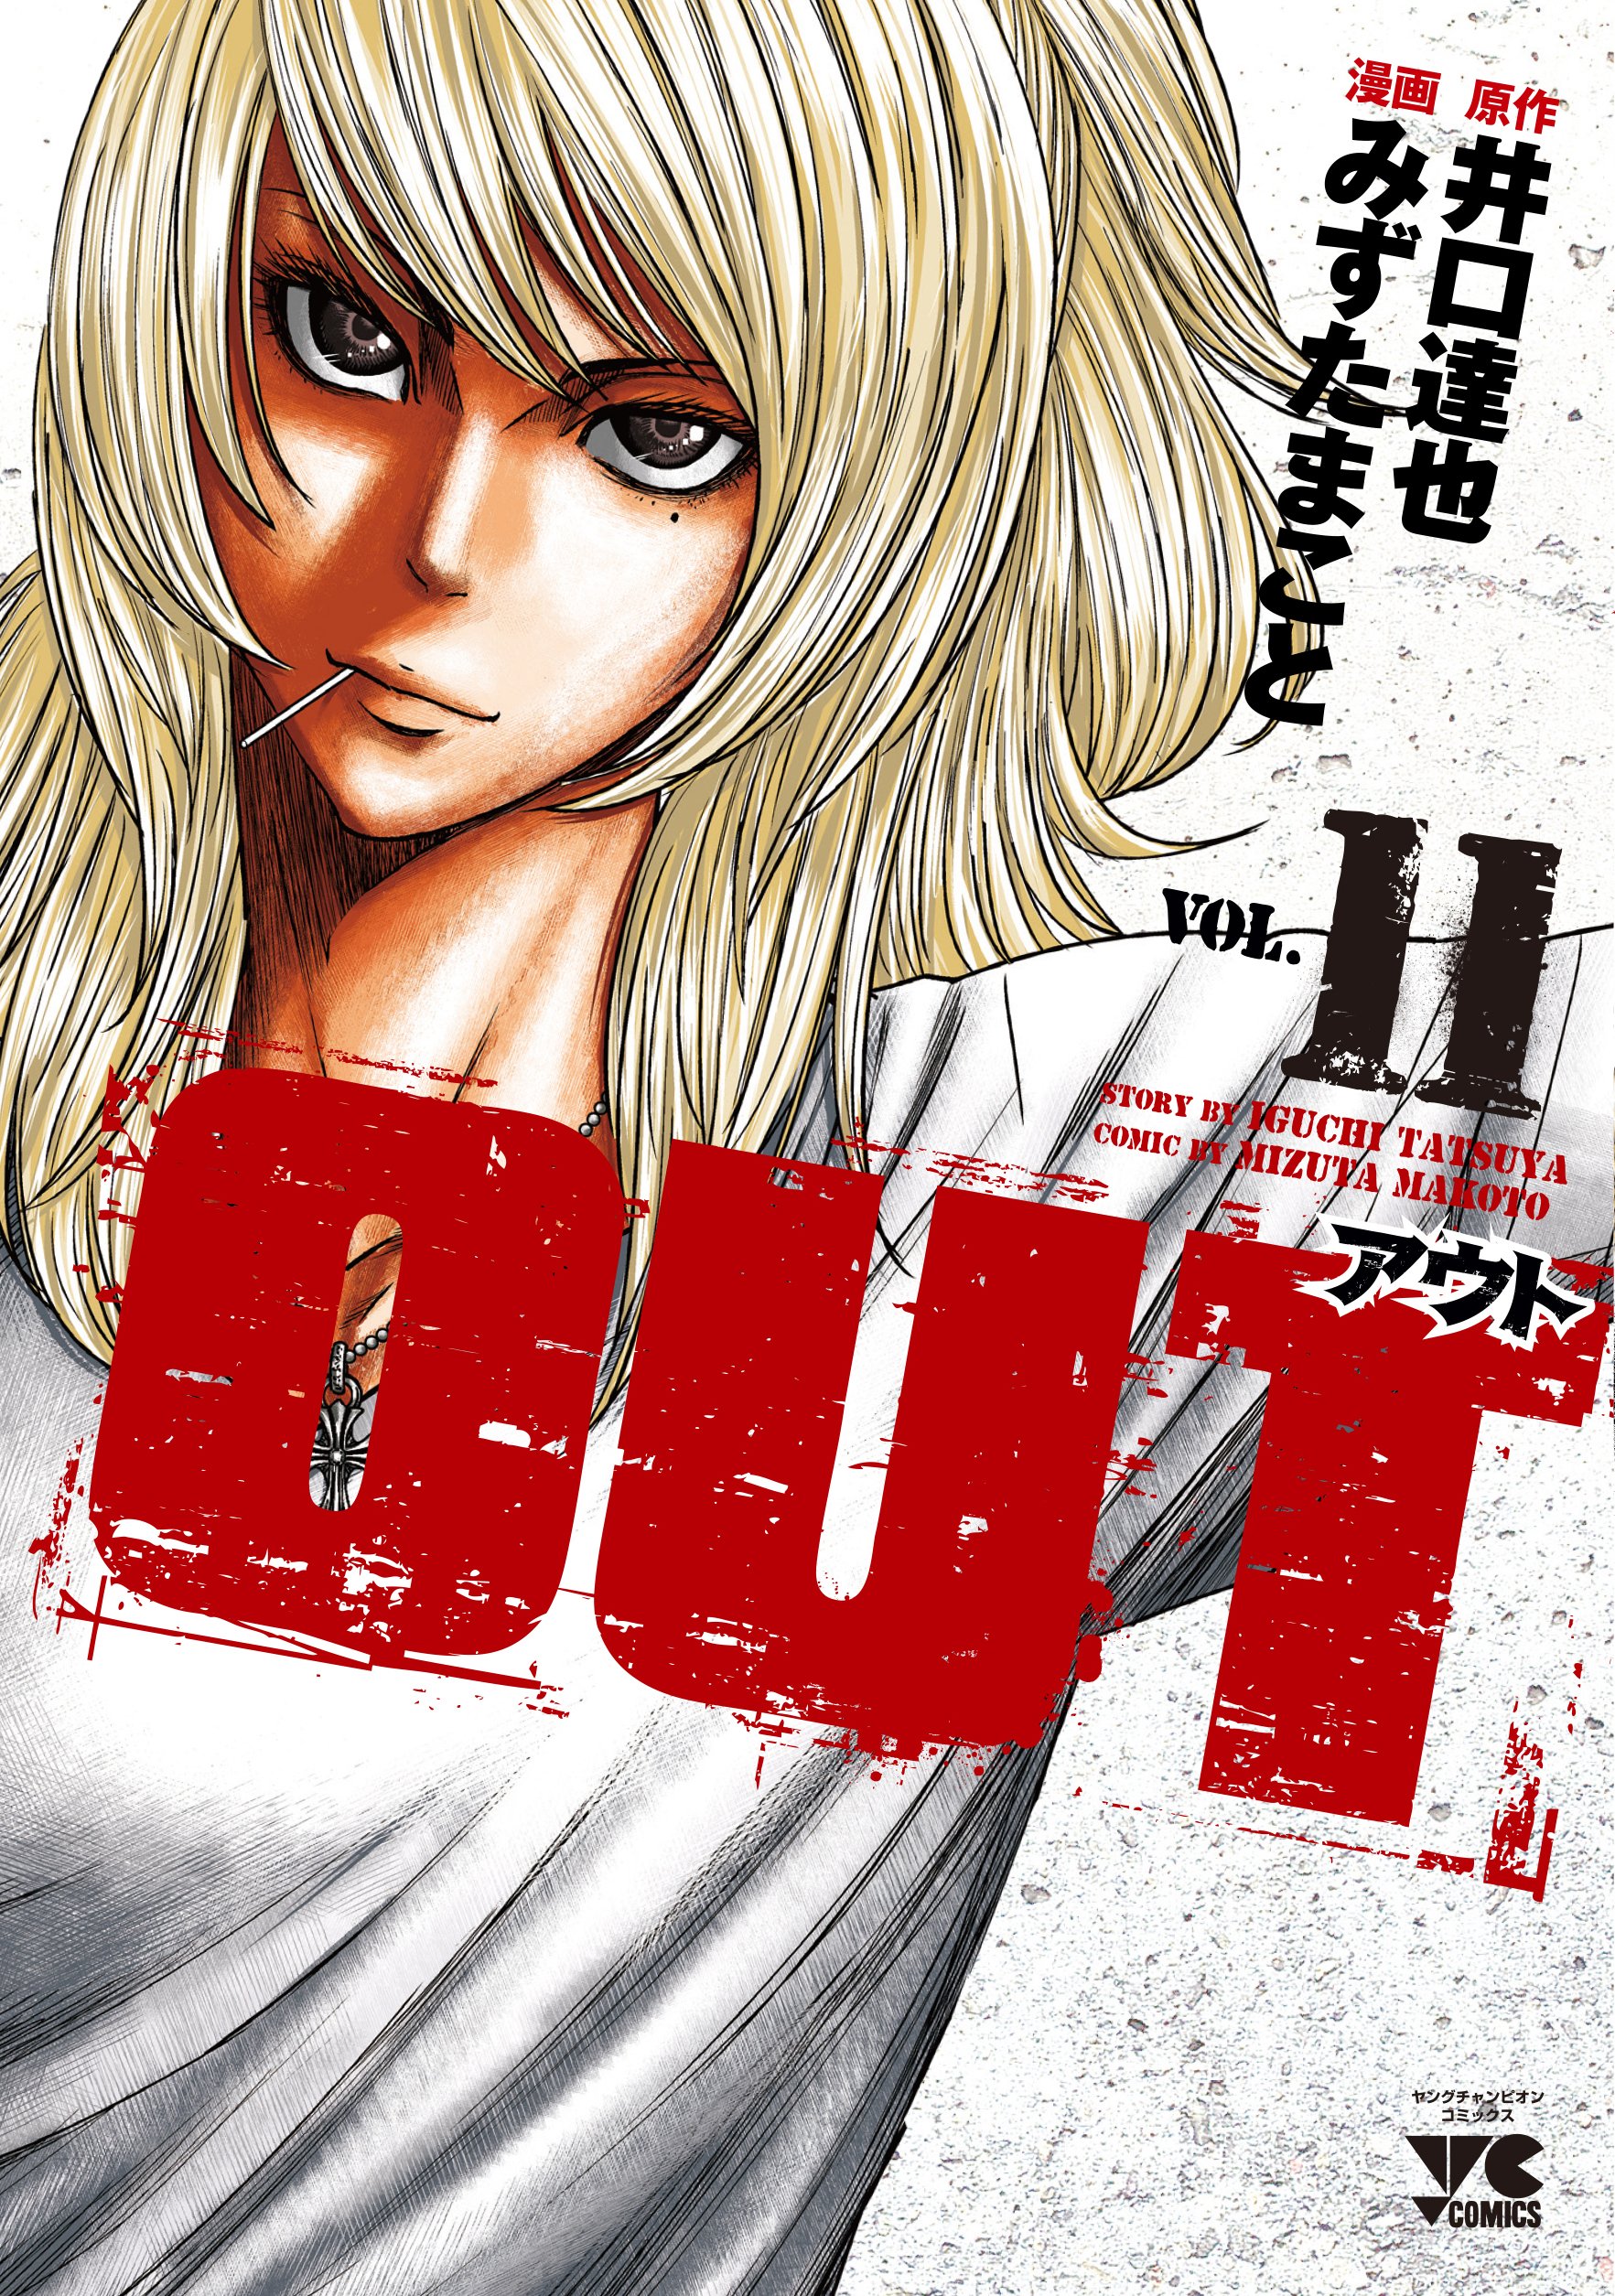  Manga  VO Out  jp Vol 11 MIZUTA Makoto IGUCHI Tatsuya 